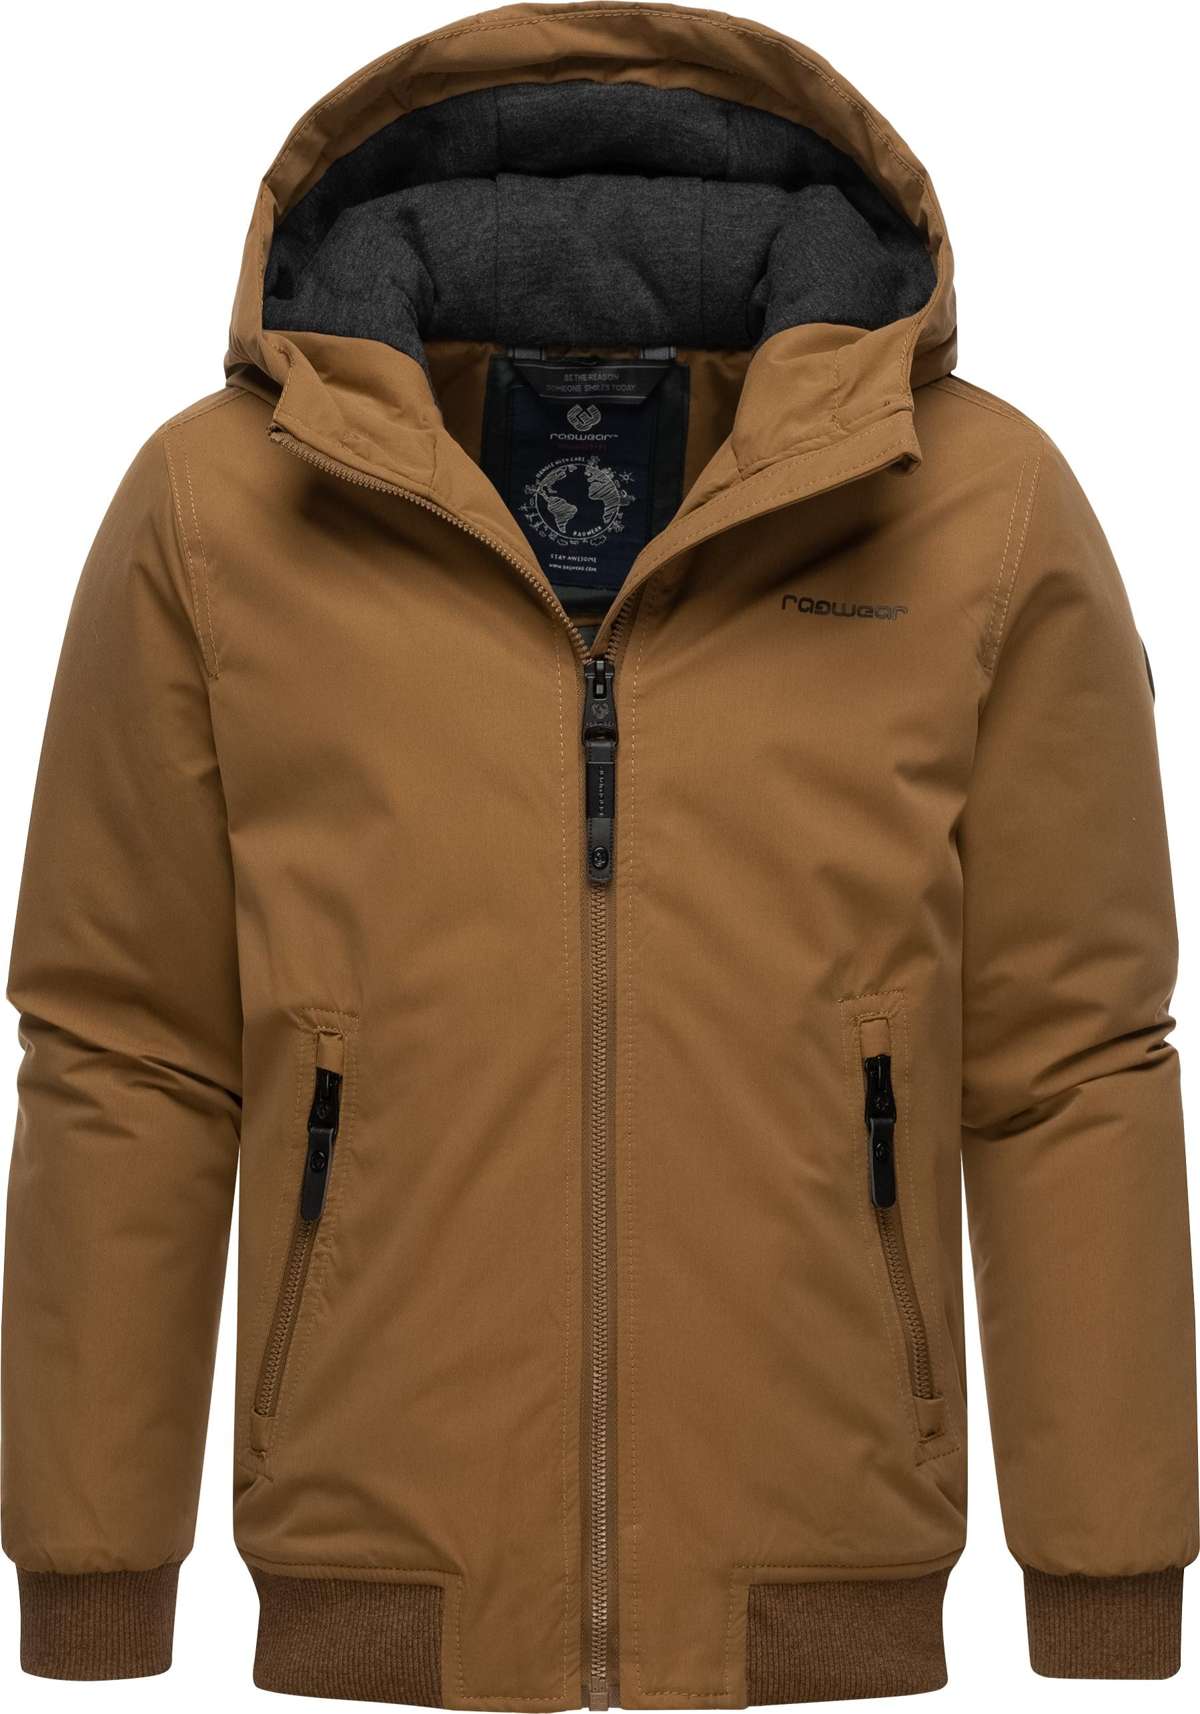 Зимняя куртка с капюшоном, спортивная зимняя уличная куртка с капюшоном